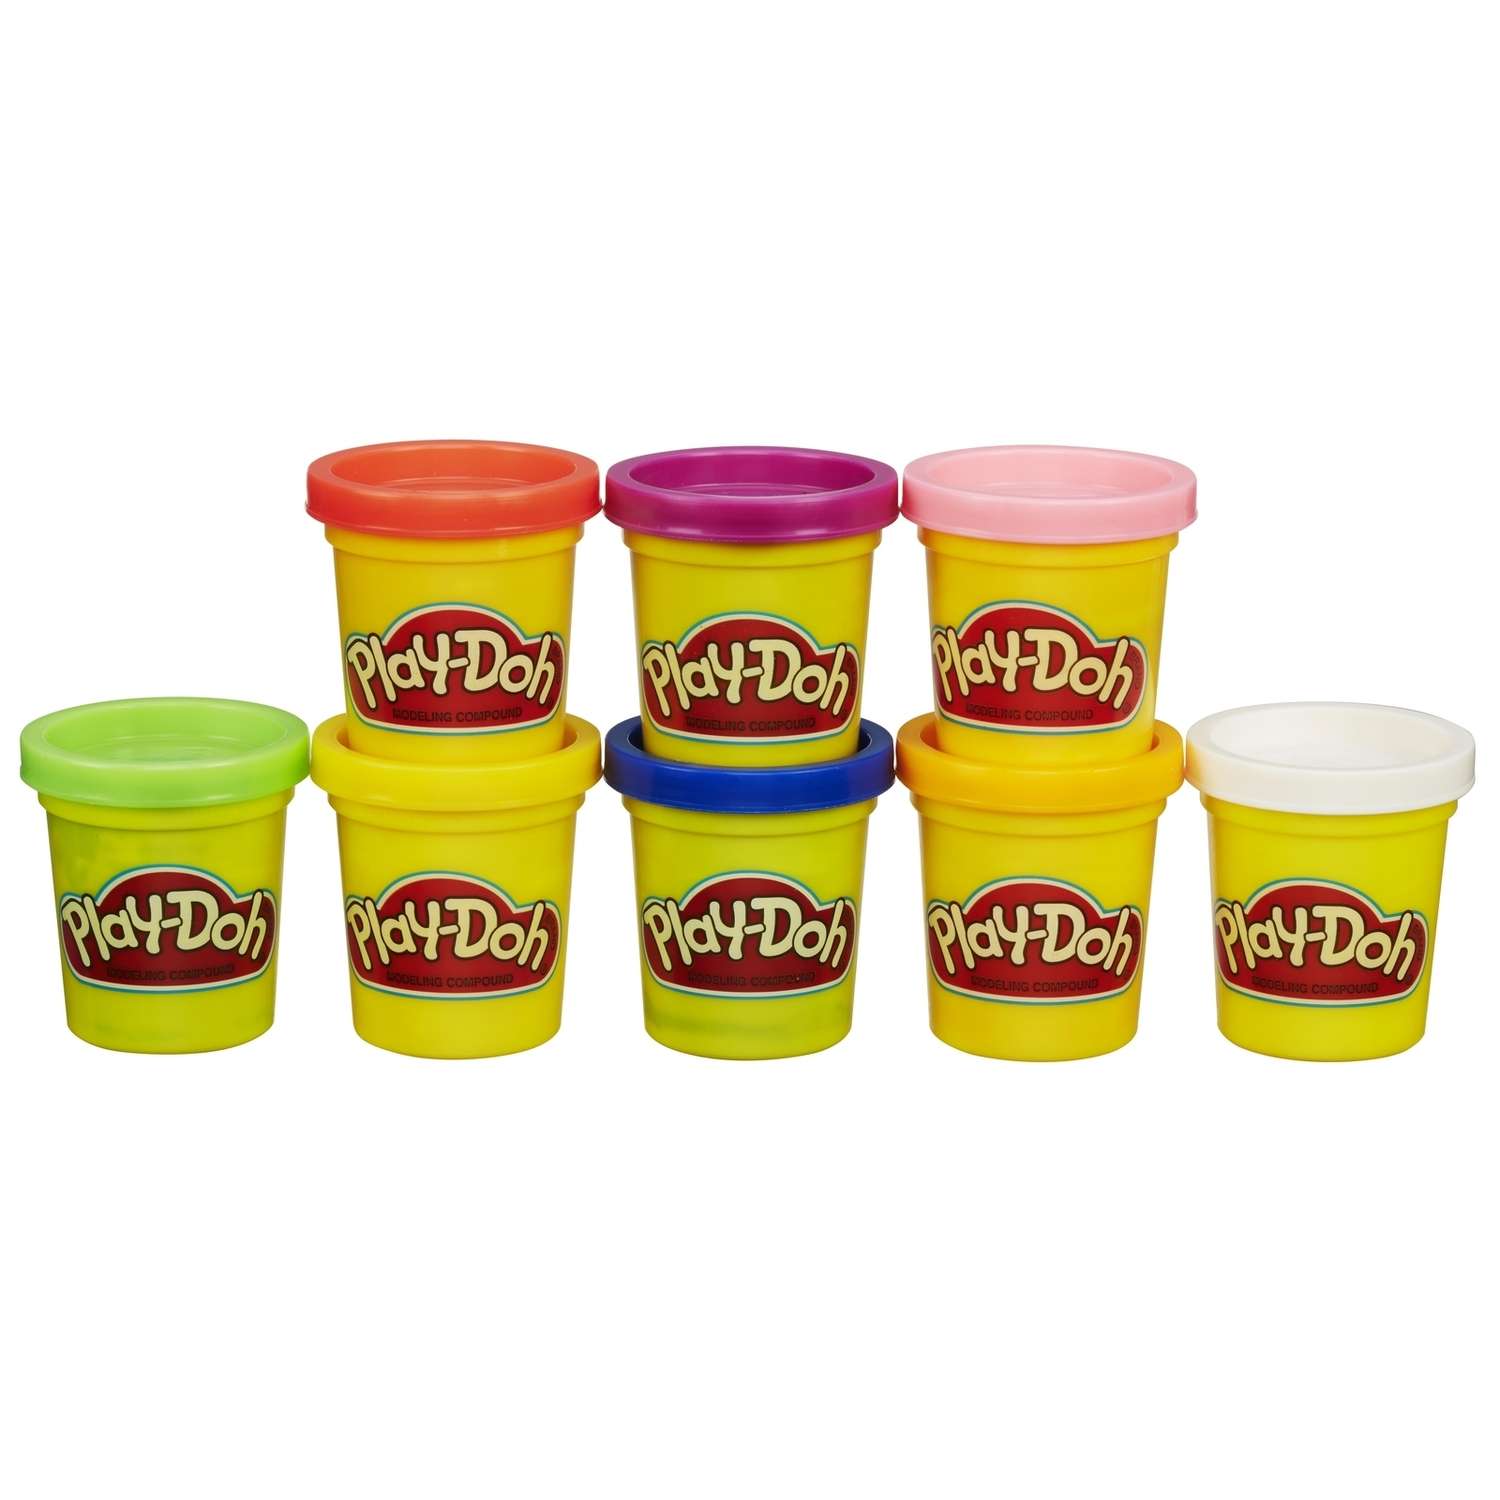 Пластилин Play-Doh (набор из 8 банок) 448 грамм - фото 2